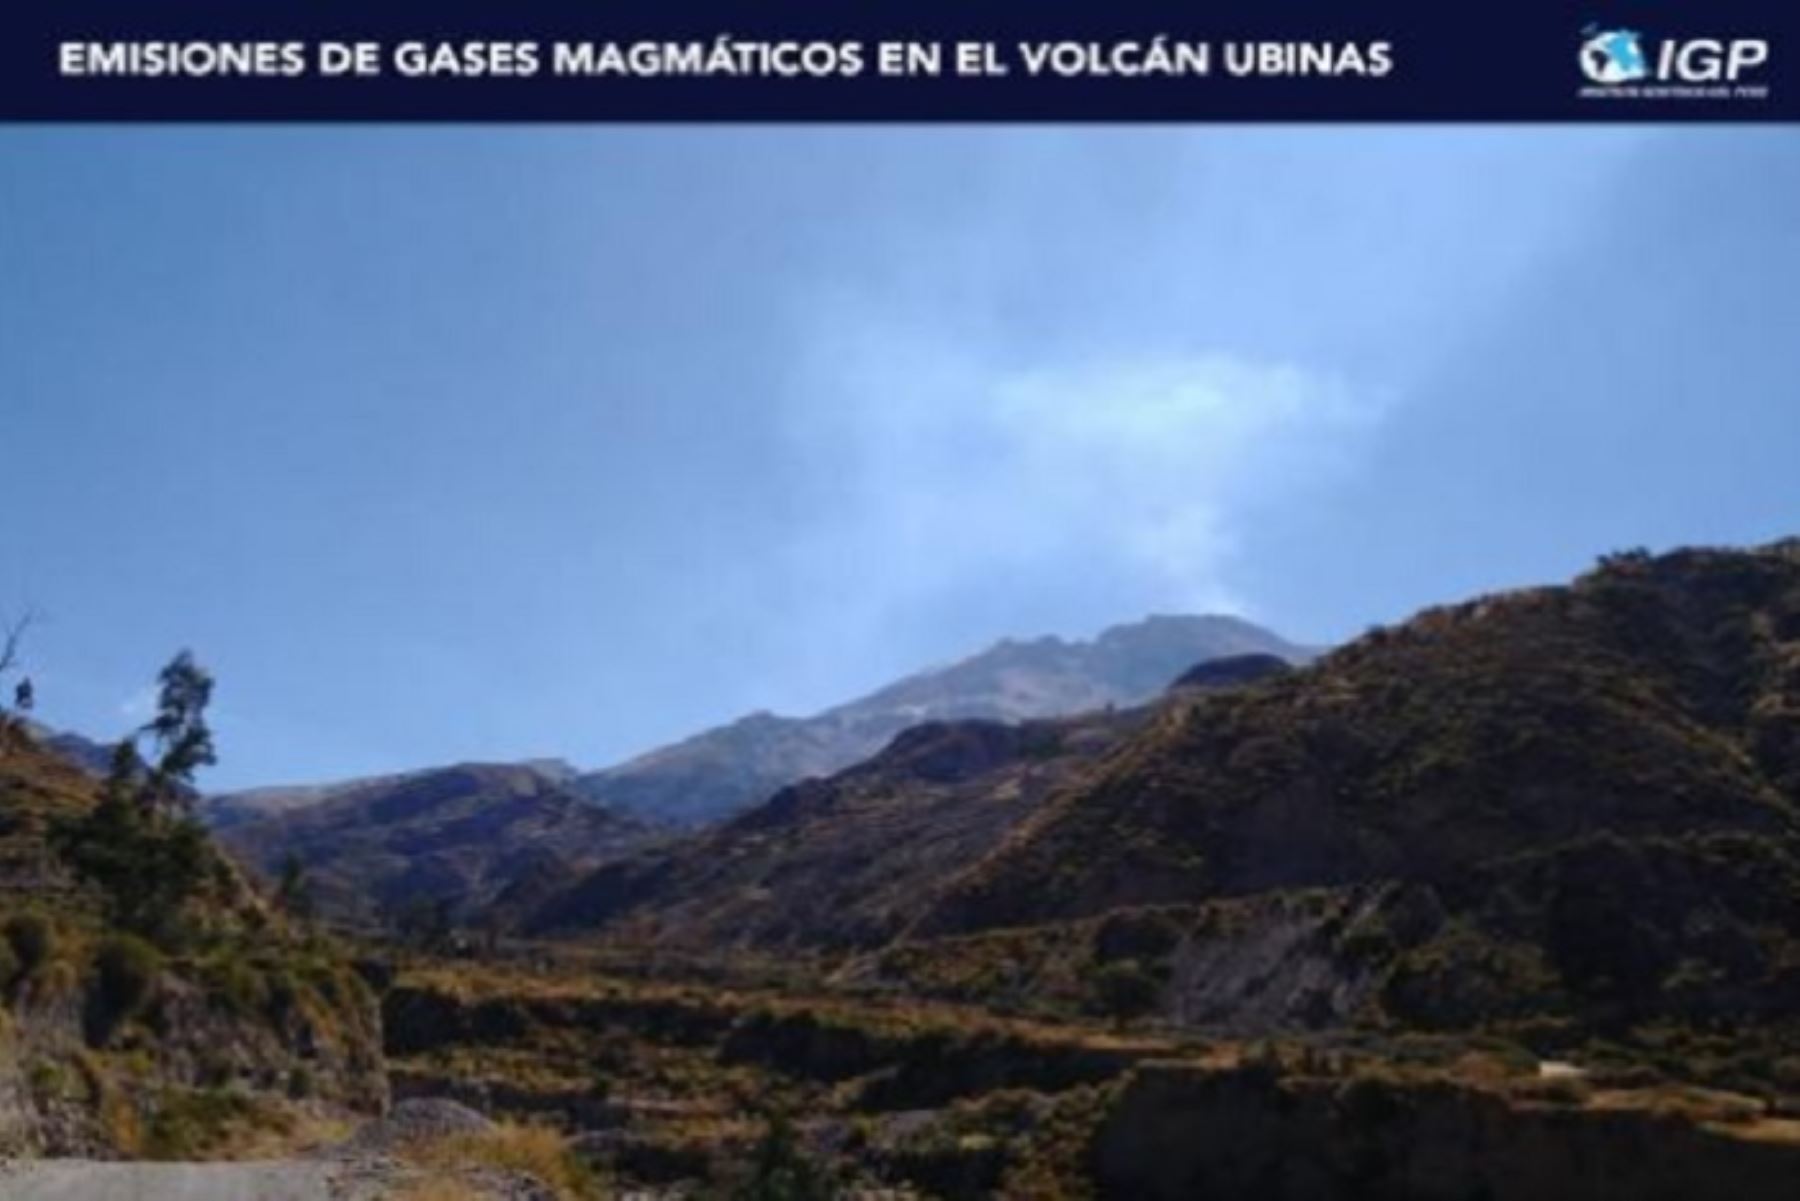 Entre el 25 y 31 de julio de este año, el volcán Ubinas registró 2,295 sismos con magnitudes menores a M2.2, cuyo mayor porcentaje está relacionado al ascenso y movimiento de fluidos volcánicos, informó el Instituto Geofísico del Perú (IGP).